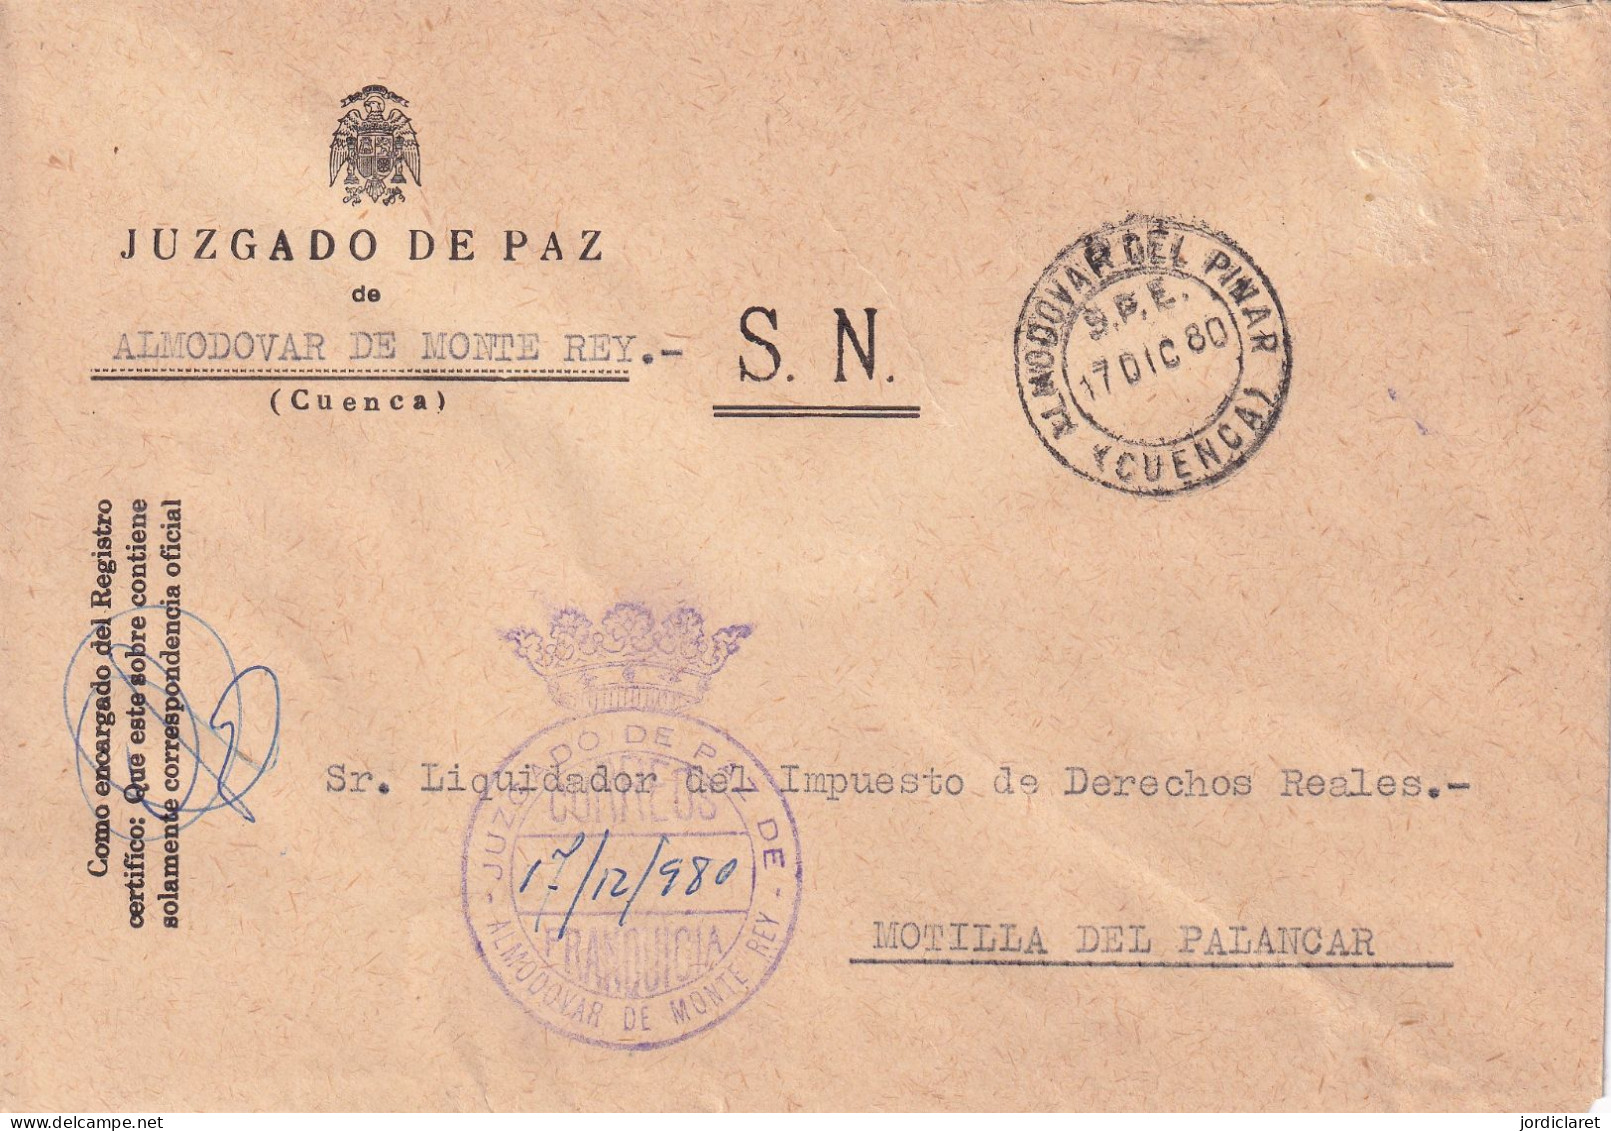 JUZGADO DE PAZ ALMODOVAR DE MONTE REY CUENCA 1980 - Franquicia Postal